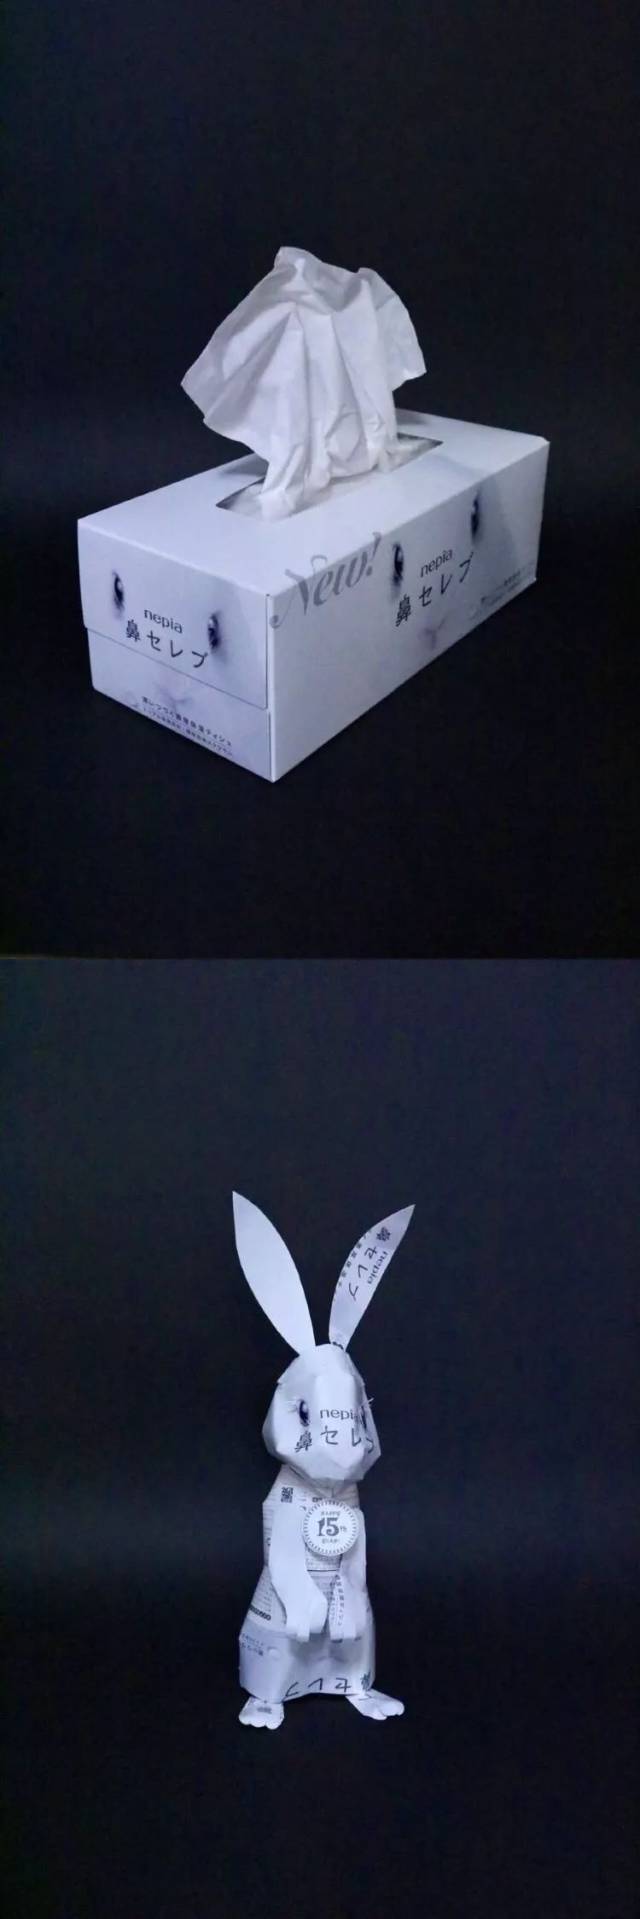 妮飘的纸巾盒 变成了能站立起来的小兔子 本来盒子上的兔兔脸 居然被